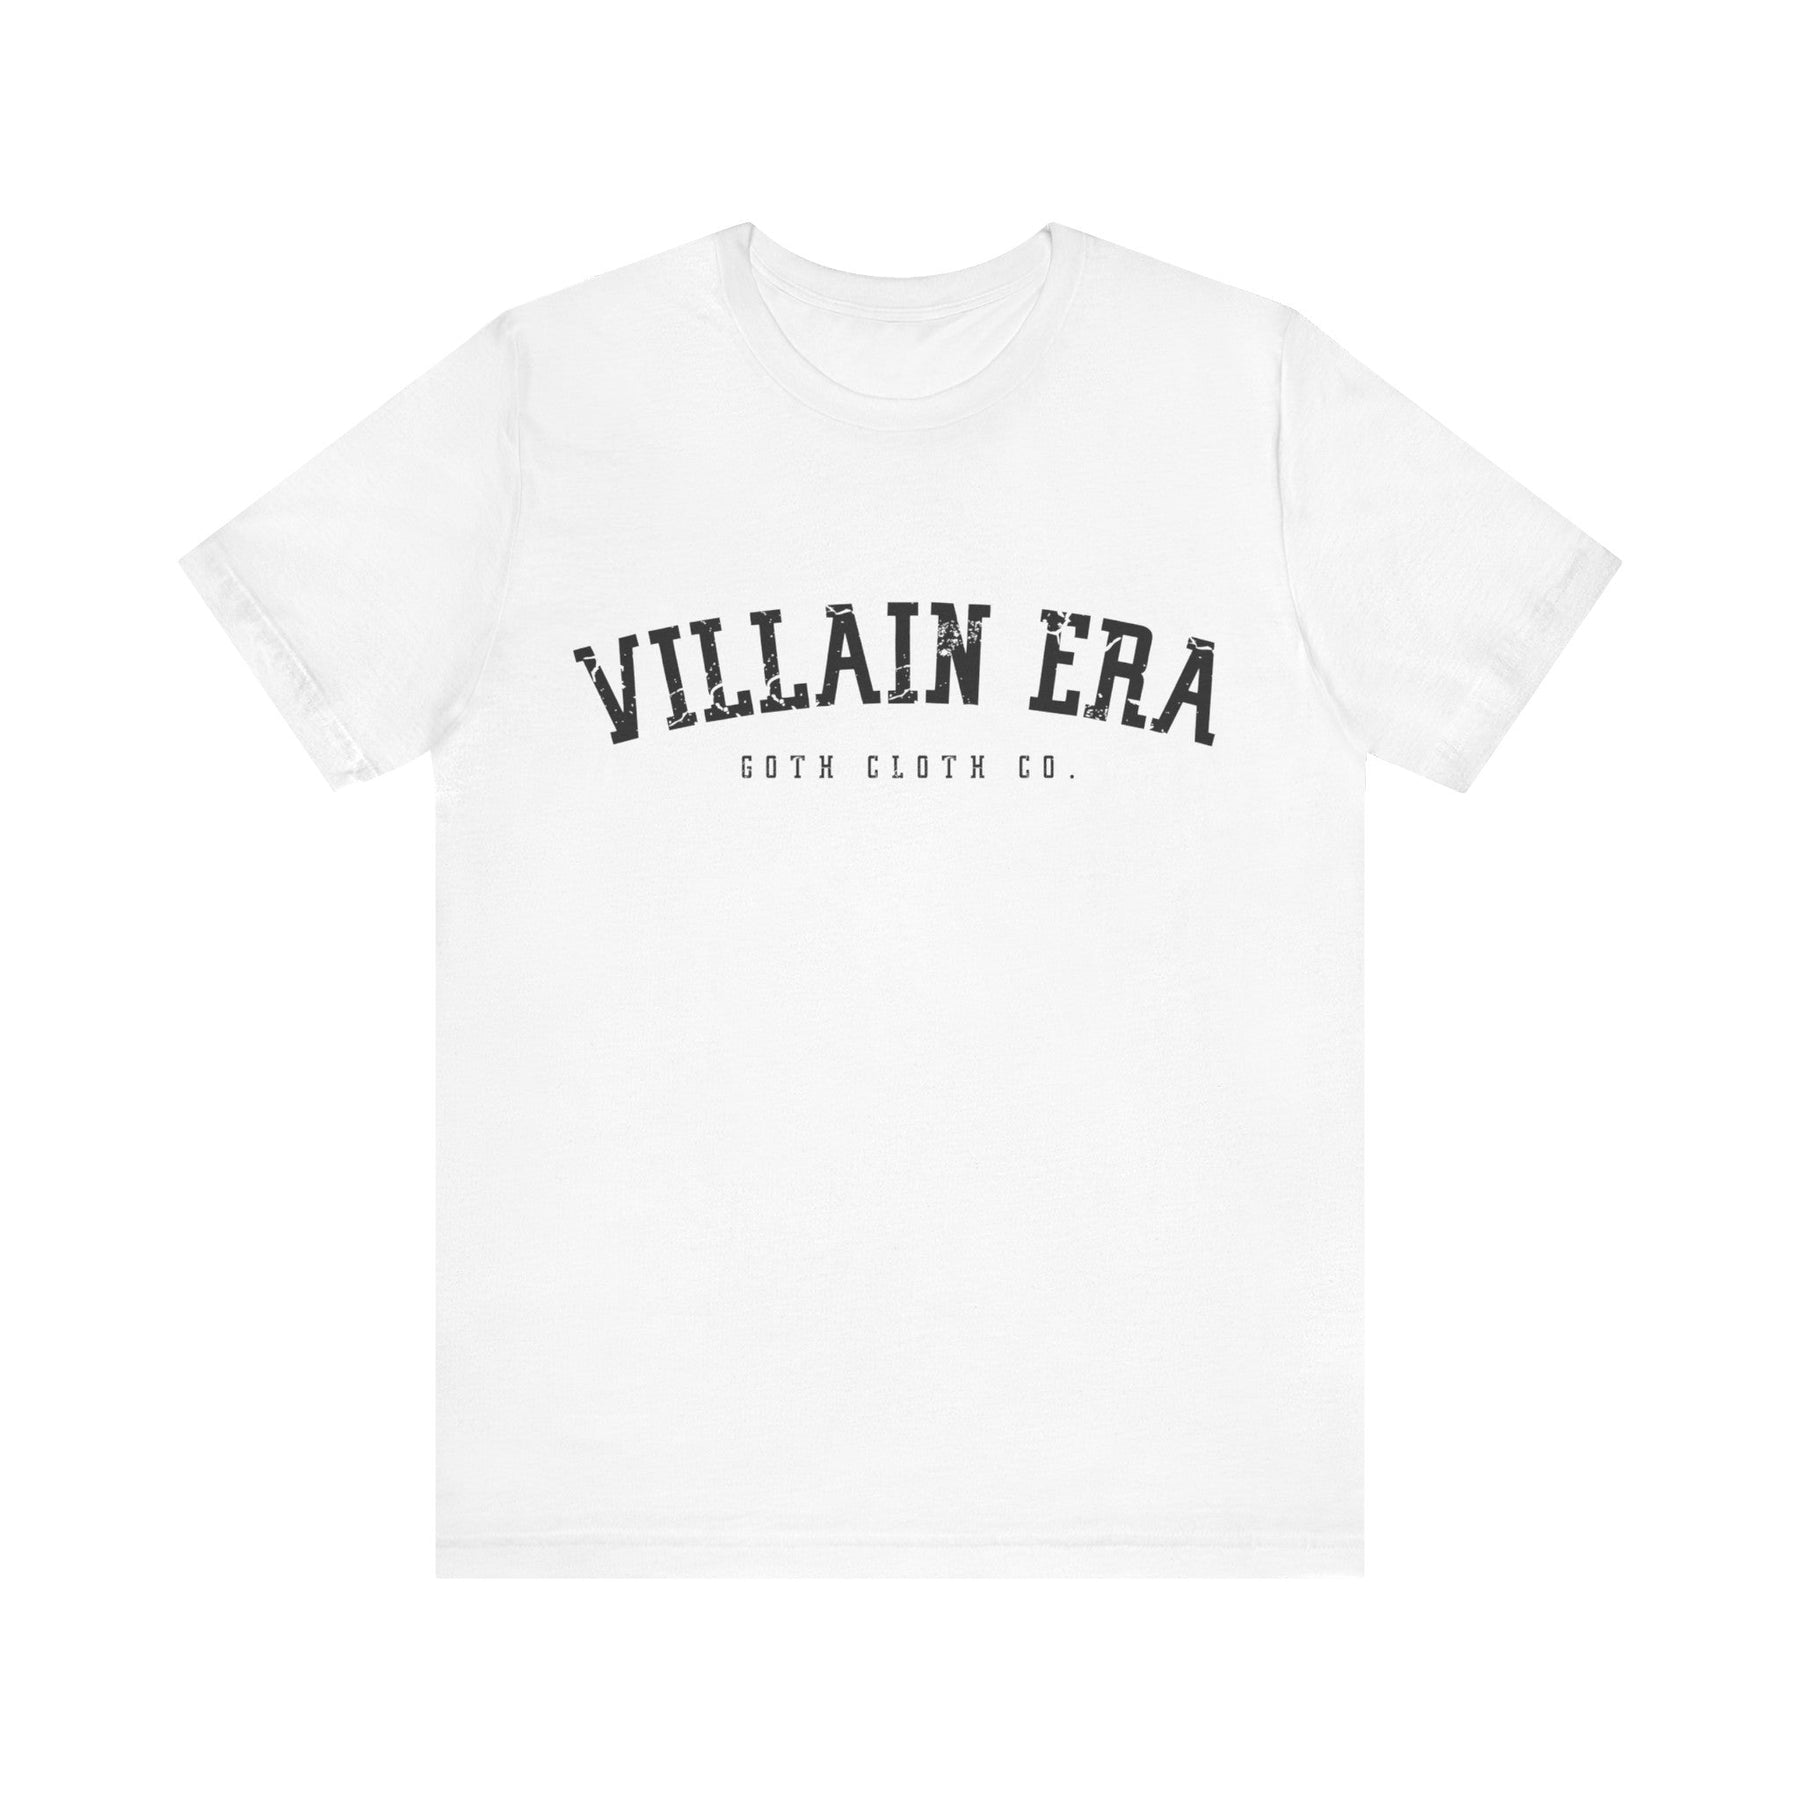 Villain Era Short Sleeve Tee - Goth Cloth Co.T - Shirt21052440041525593290